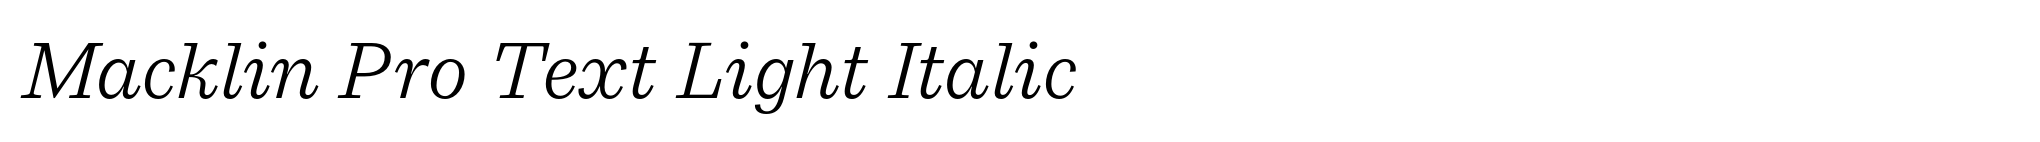 Macklin Pro Text Light Italic image